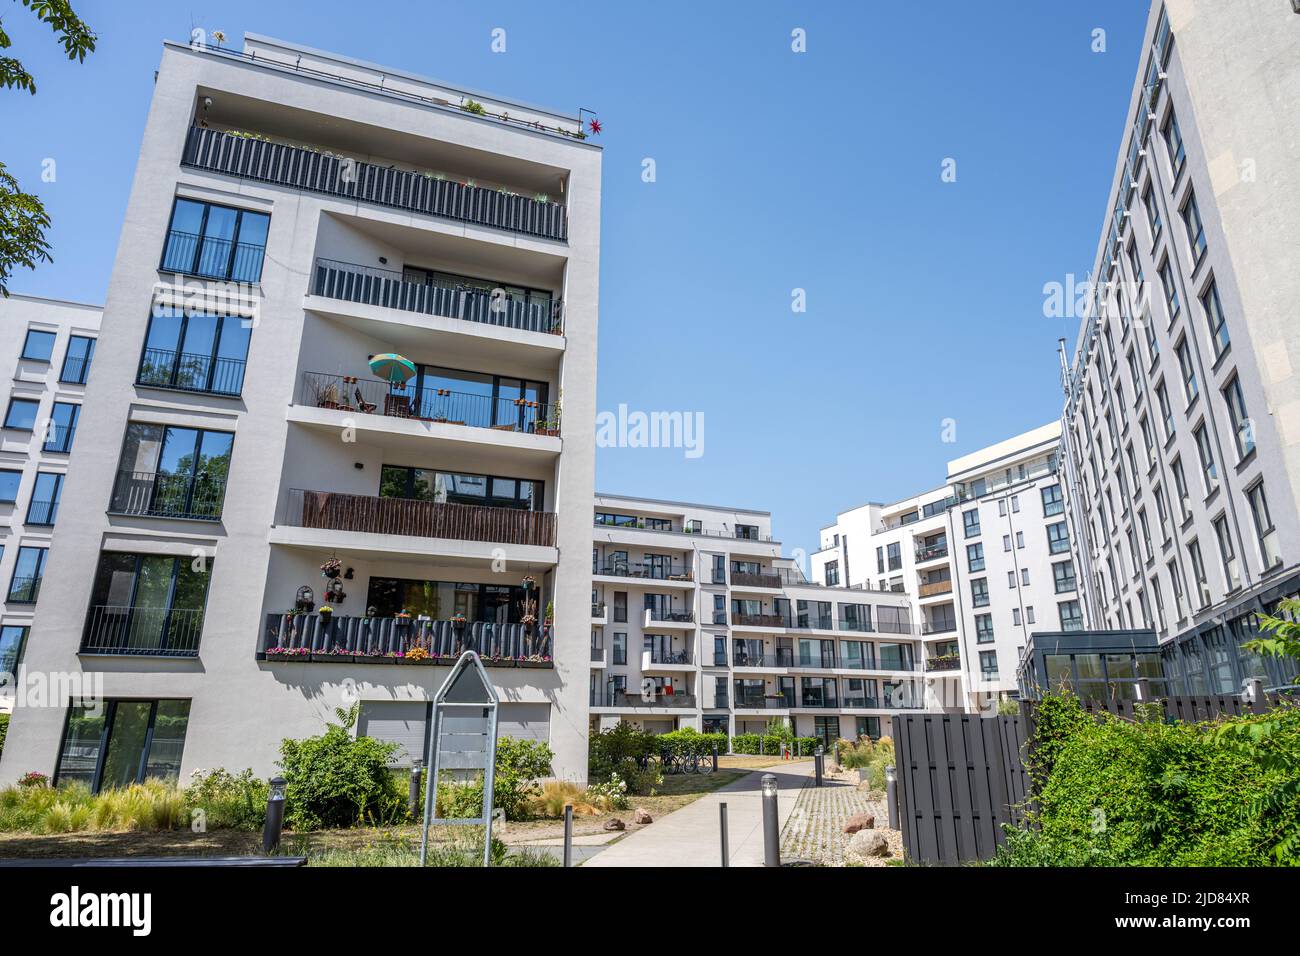 Nuevos edificios de apartamentos en una zona de urbanización en Berlín, Alemania Foto de stock